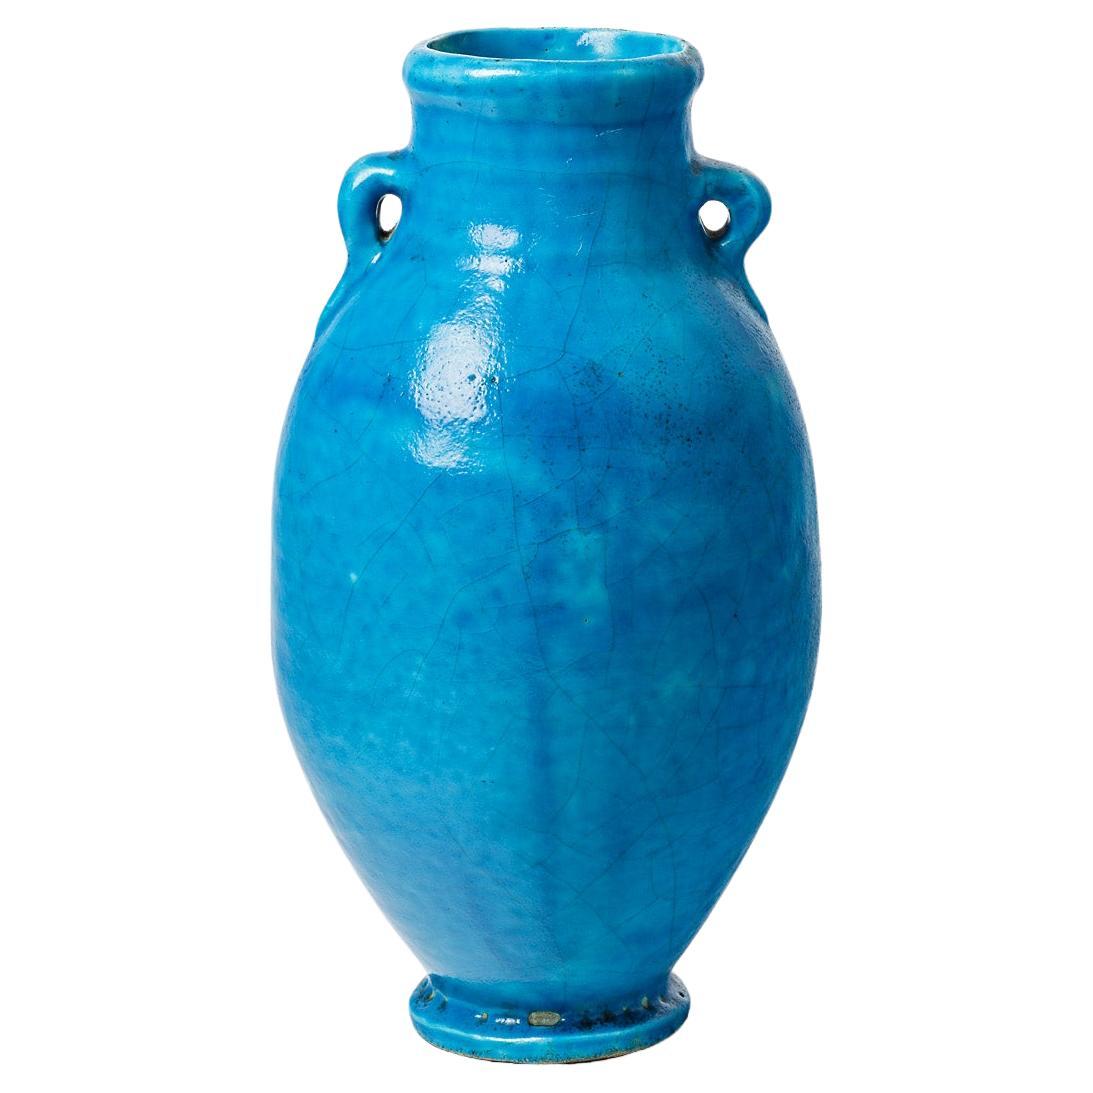 Vase aus blau glasierter Keramik, Raoul Lachenal zugeschrieben, um 1930.